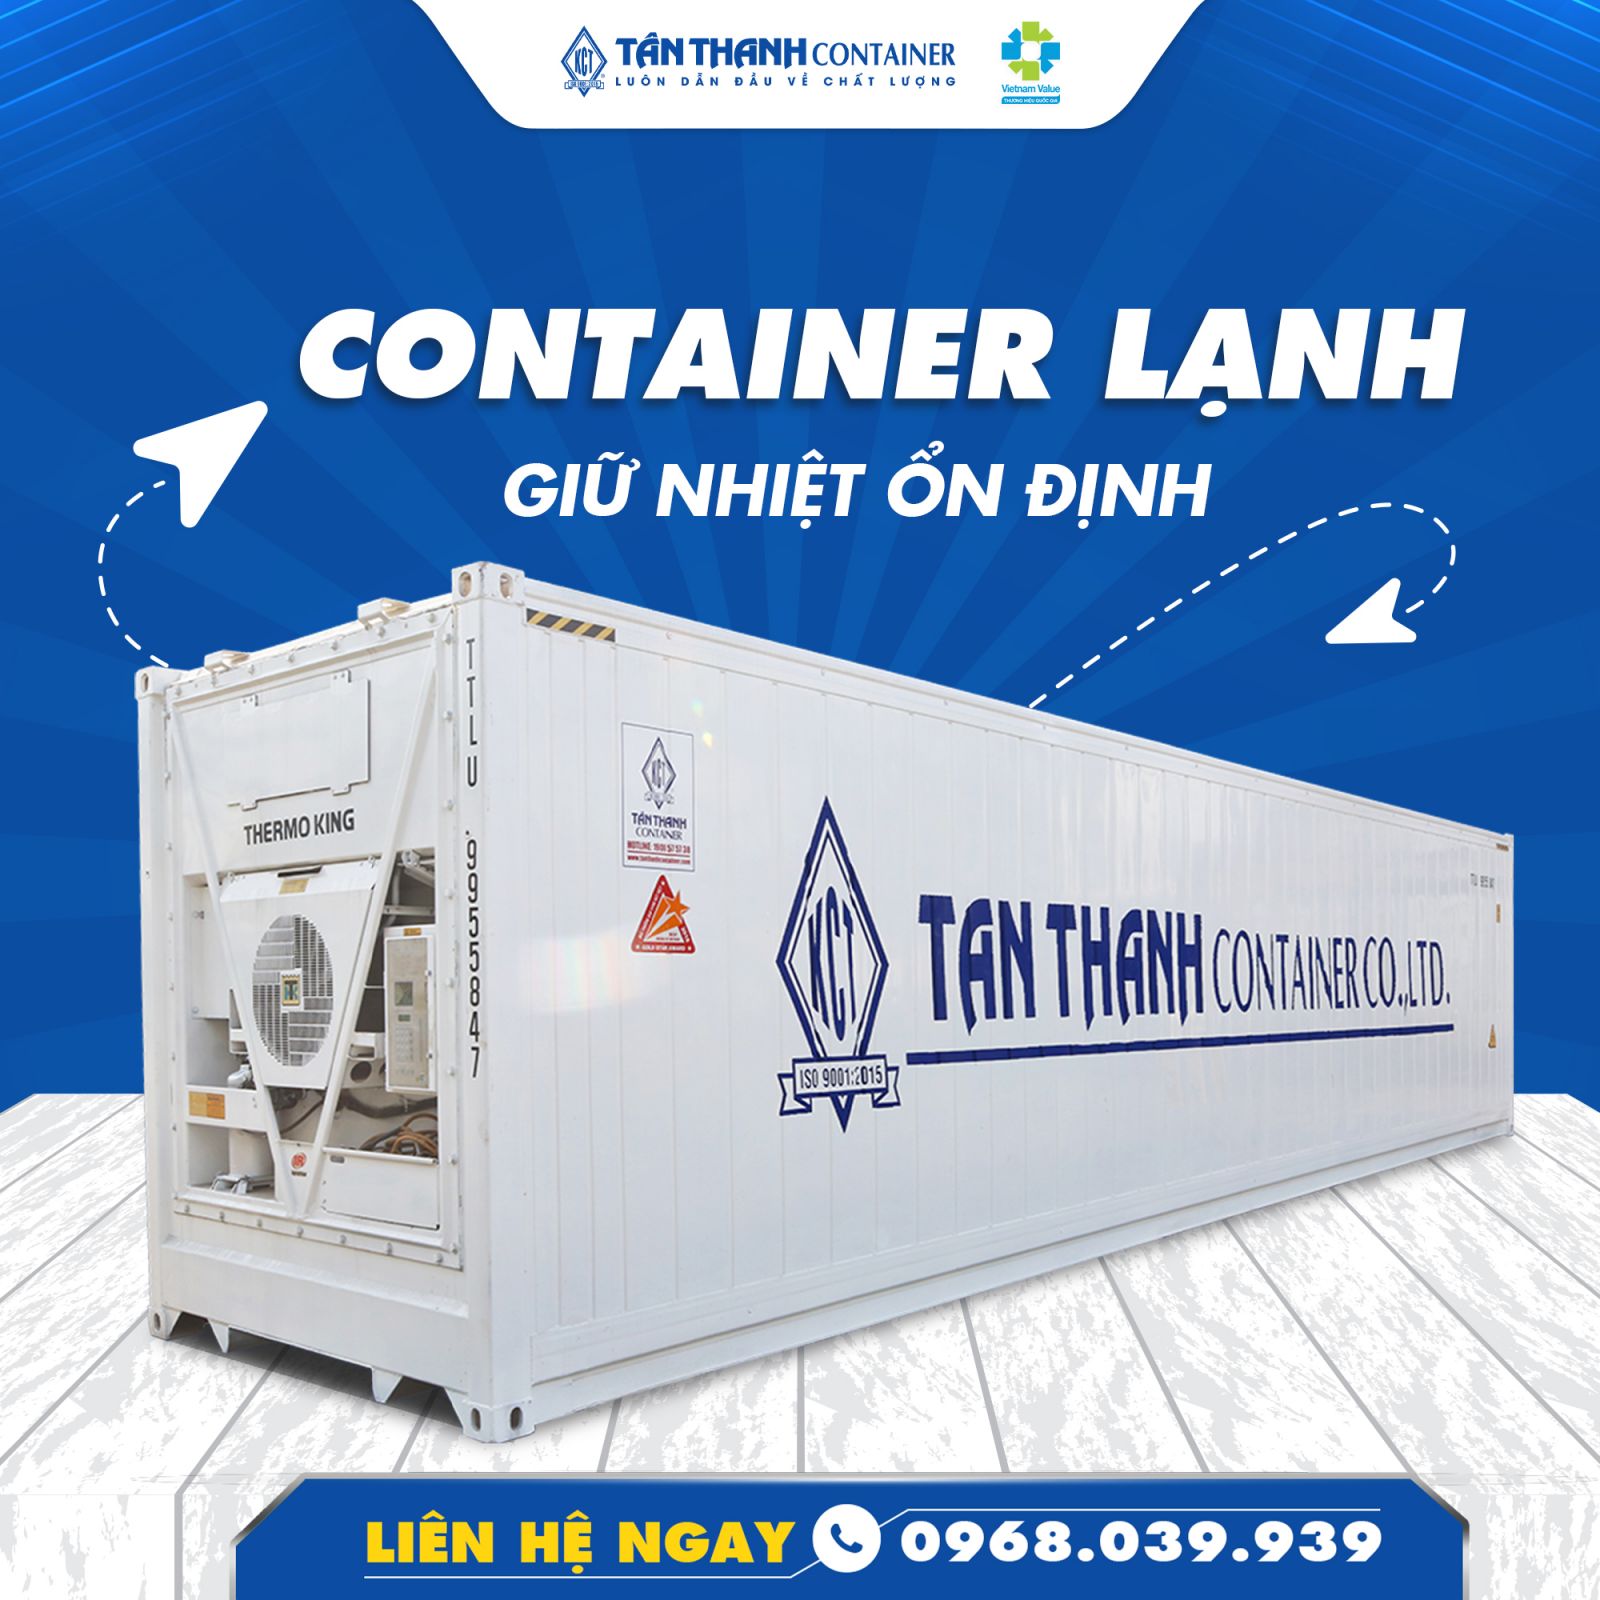 Container lạnh tại Tân Thanh Container giữ nhiệt ổn định trong mọi hoàn cảnh